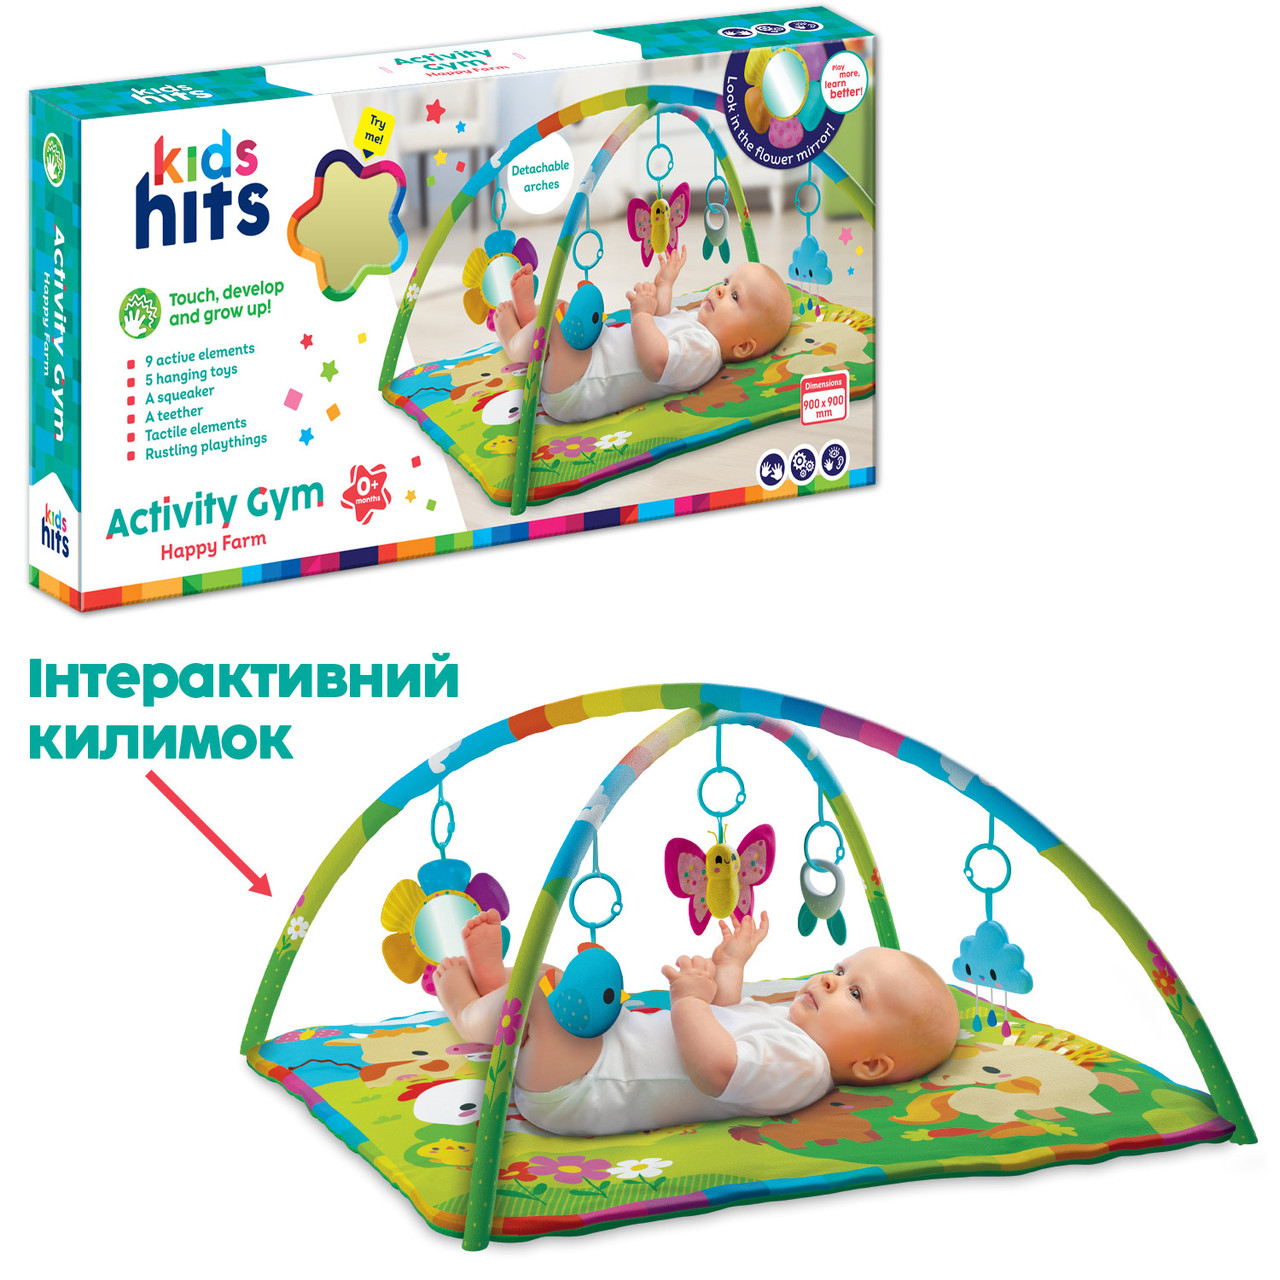 Килимок для малюків Kids Hits KH06/007 (6 шт.) тактильні елементи, дзеркало, яскраві стрічки, підвісні ⁶